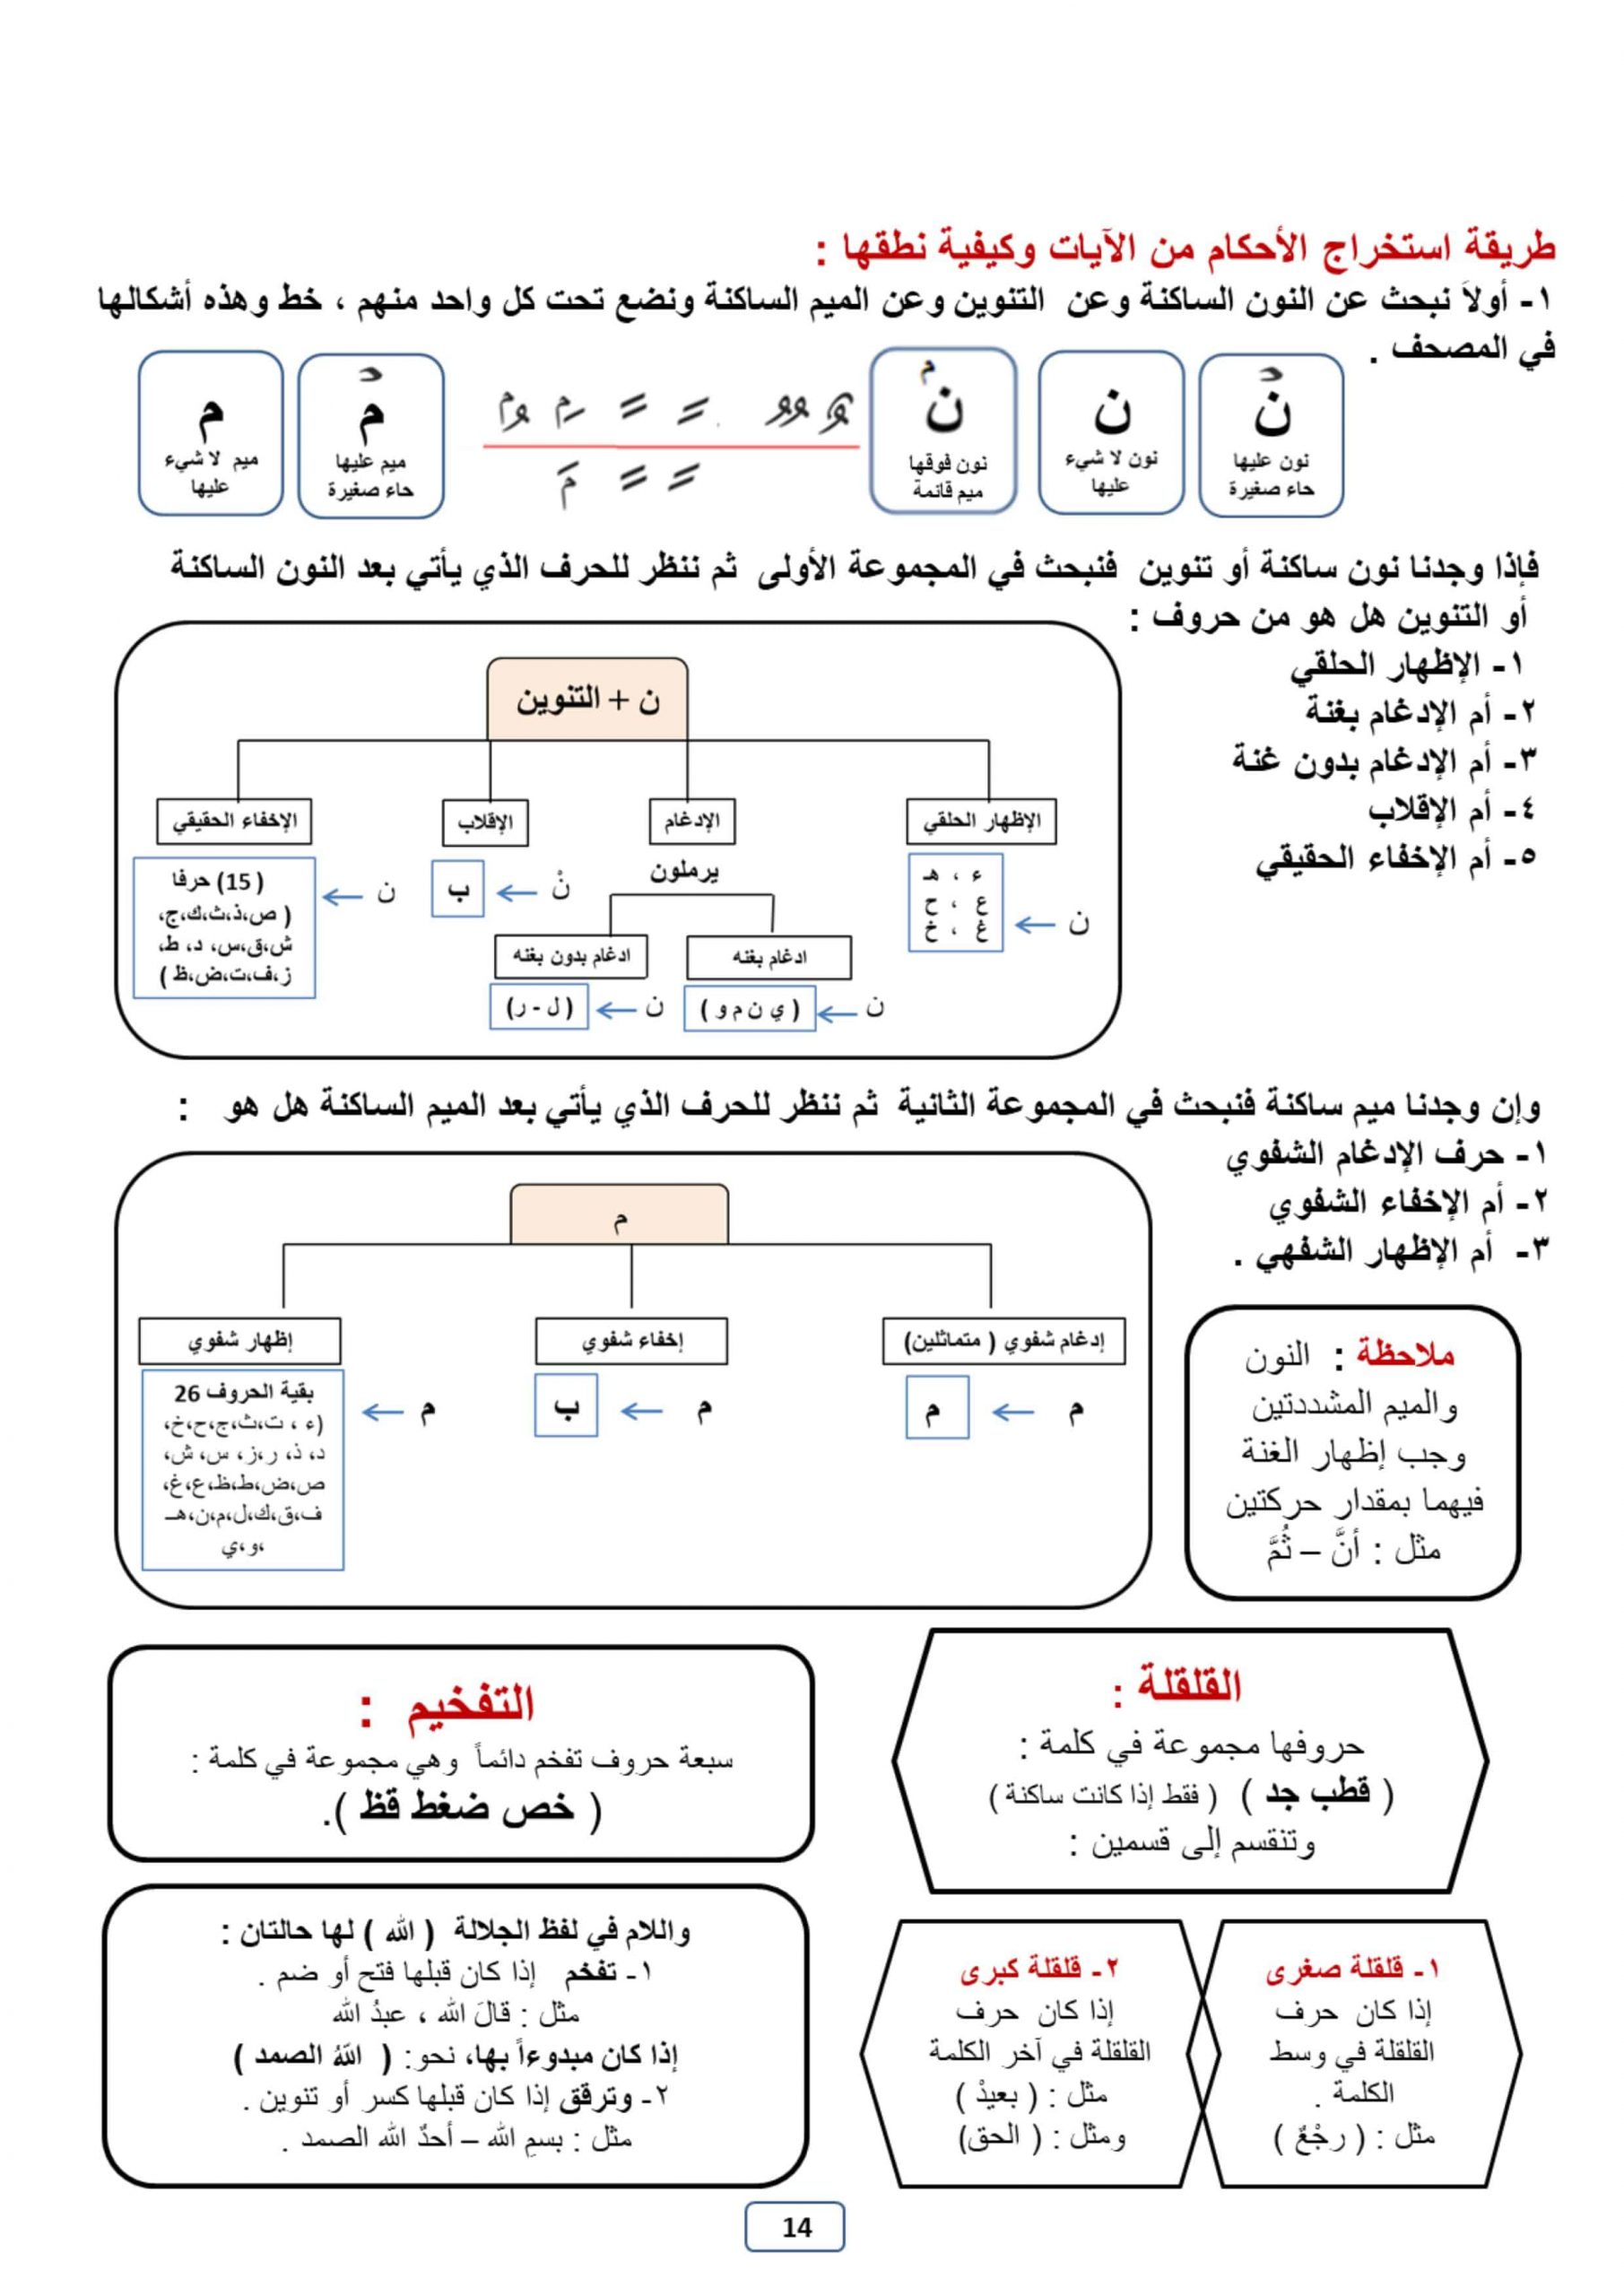 حل اوراق عمل متنوعة الصف السابع مادة التربية الاسلامية